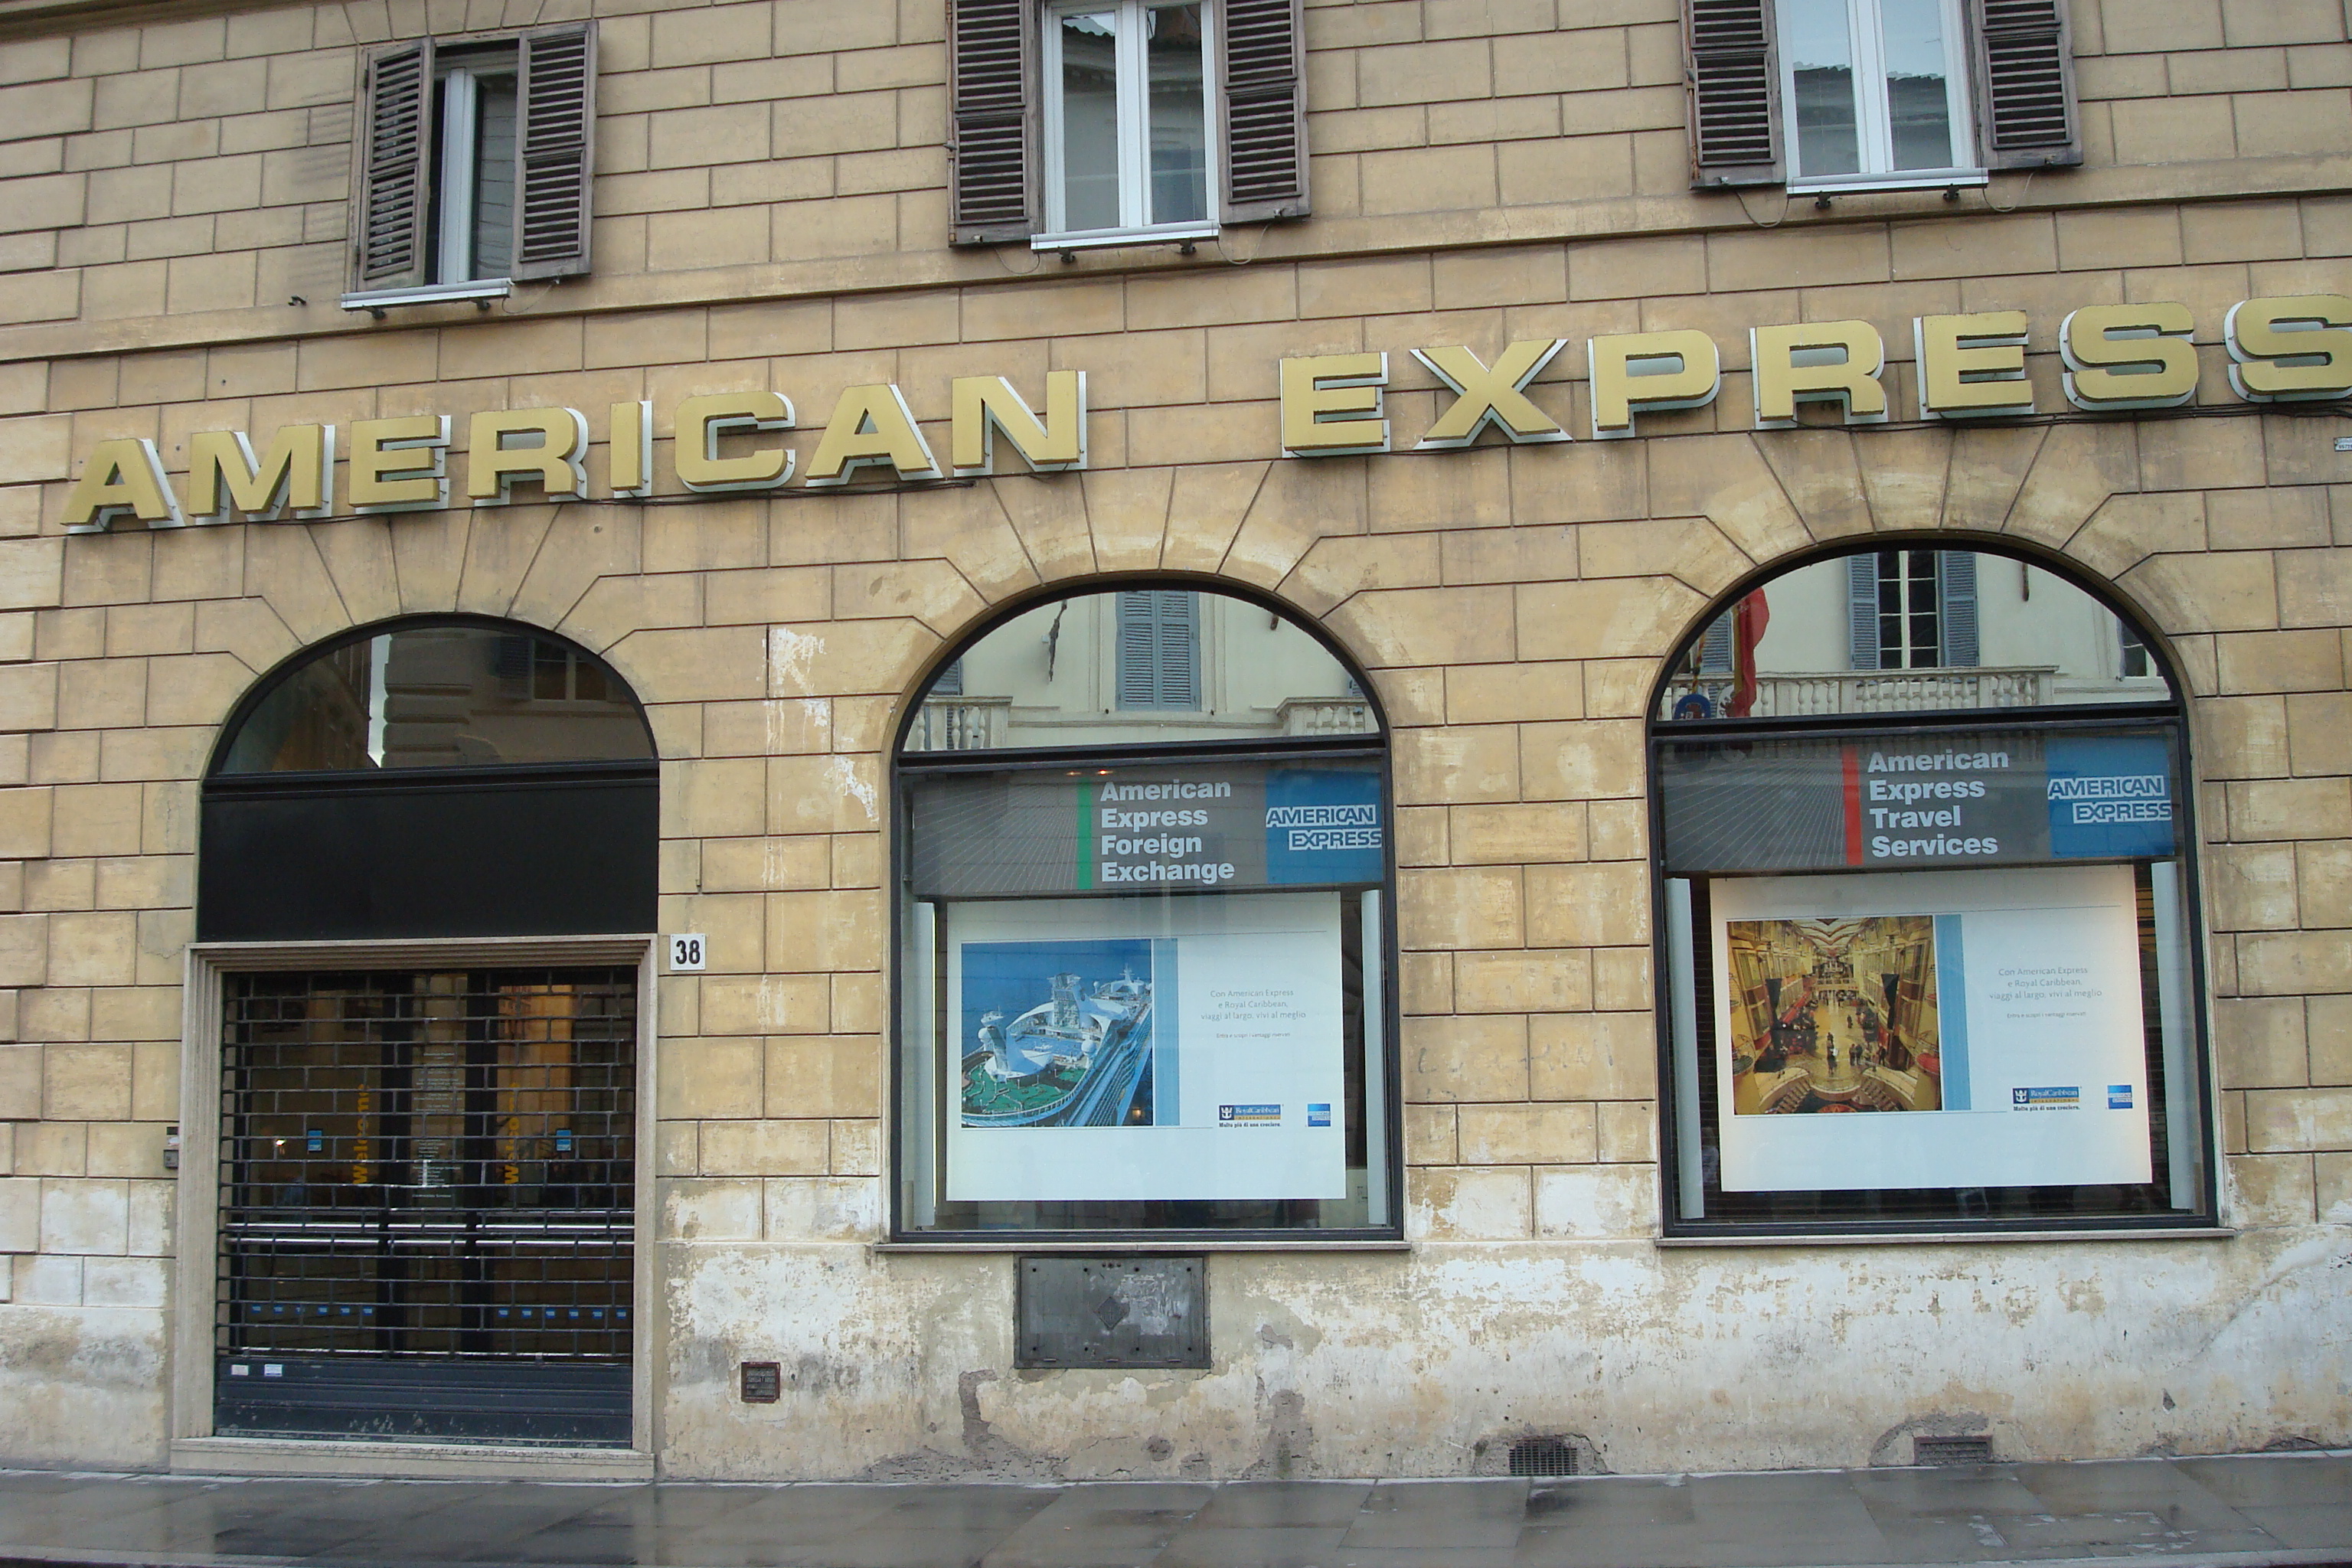 American Express 2007 / 2009 – Roma, Milano, Firenze,Venezia – Concessionari esclusivisti degli spazi adv e delle location Amex store.